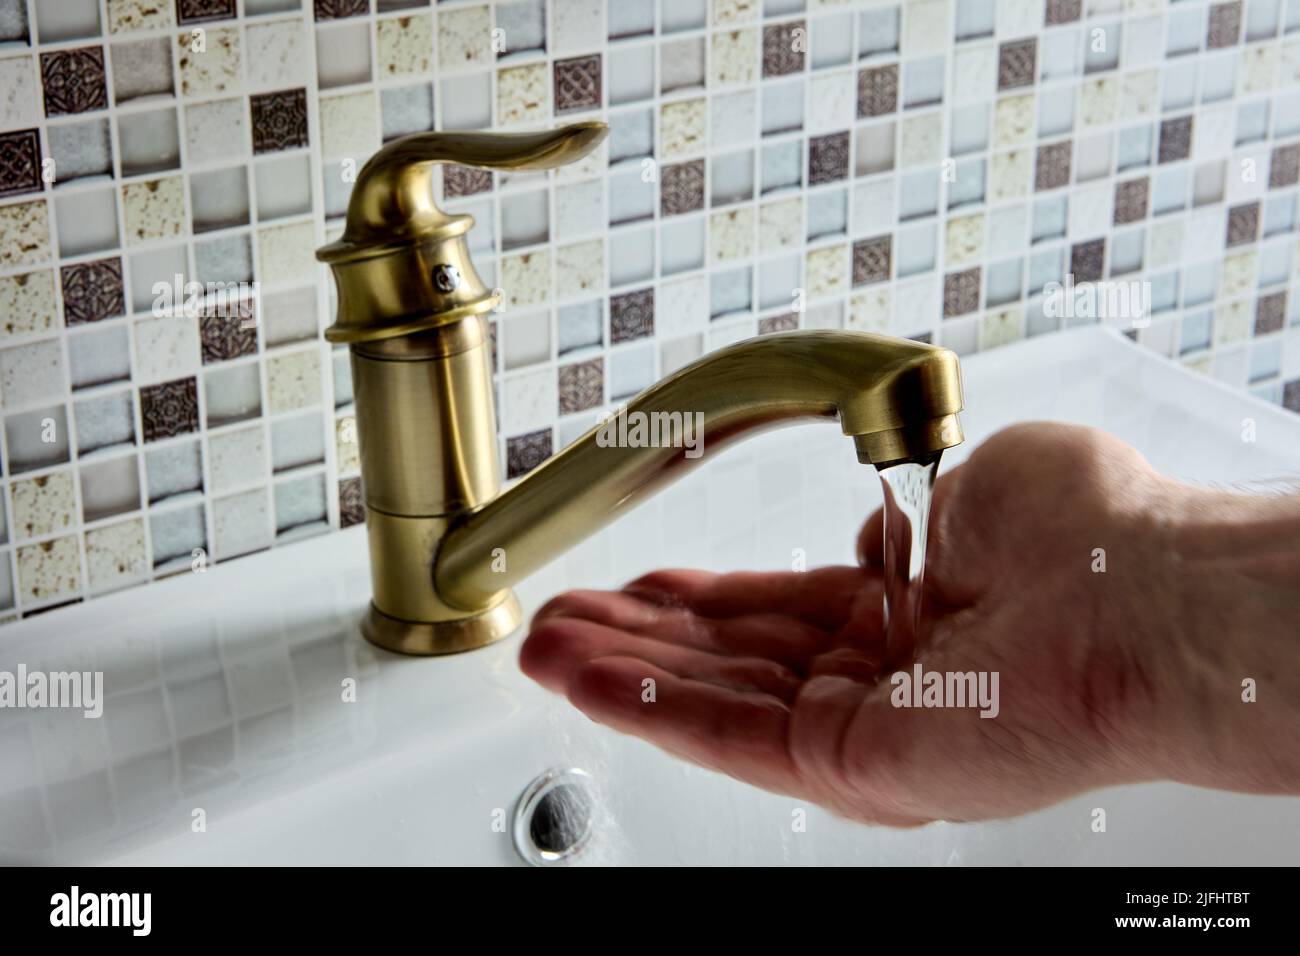 Grifo monomando de latón con palanca de codo simple en el baño, la mano está comprobando la temperatura del agua. Foto de stock